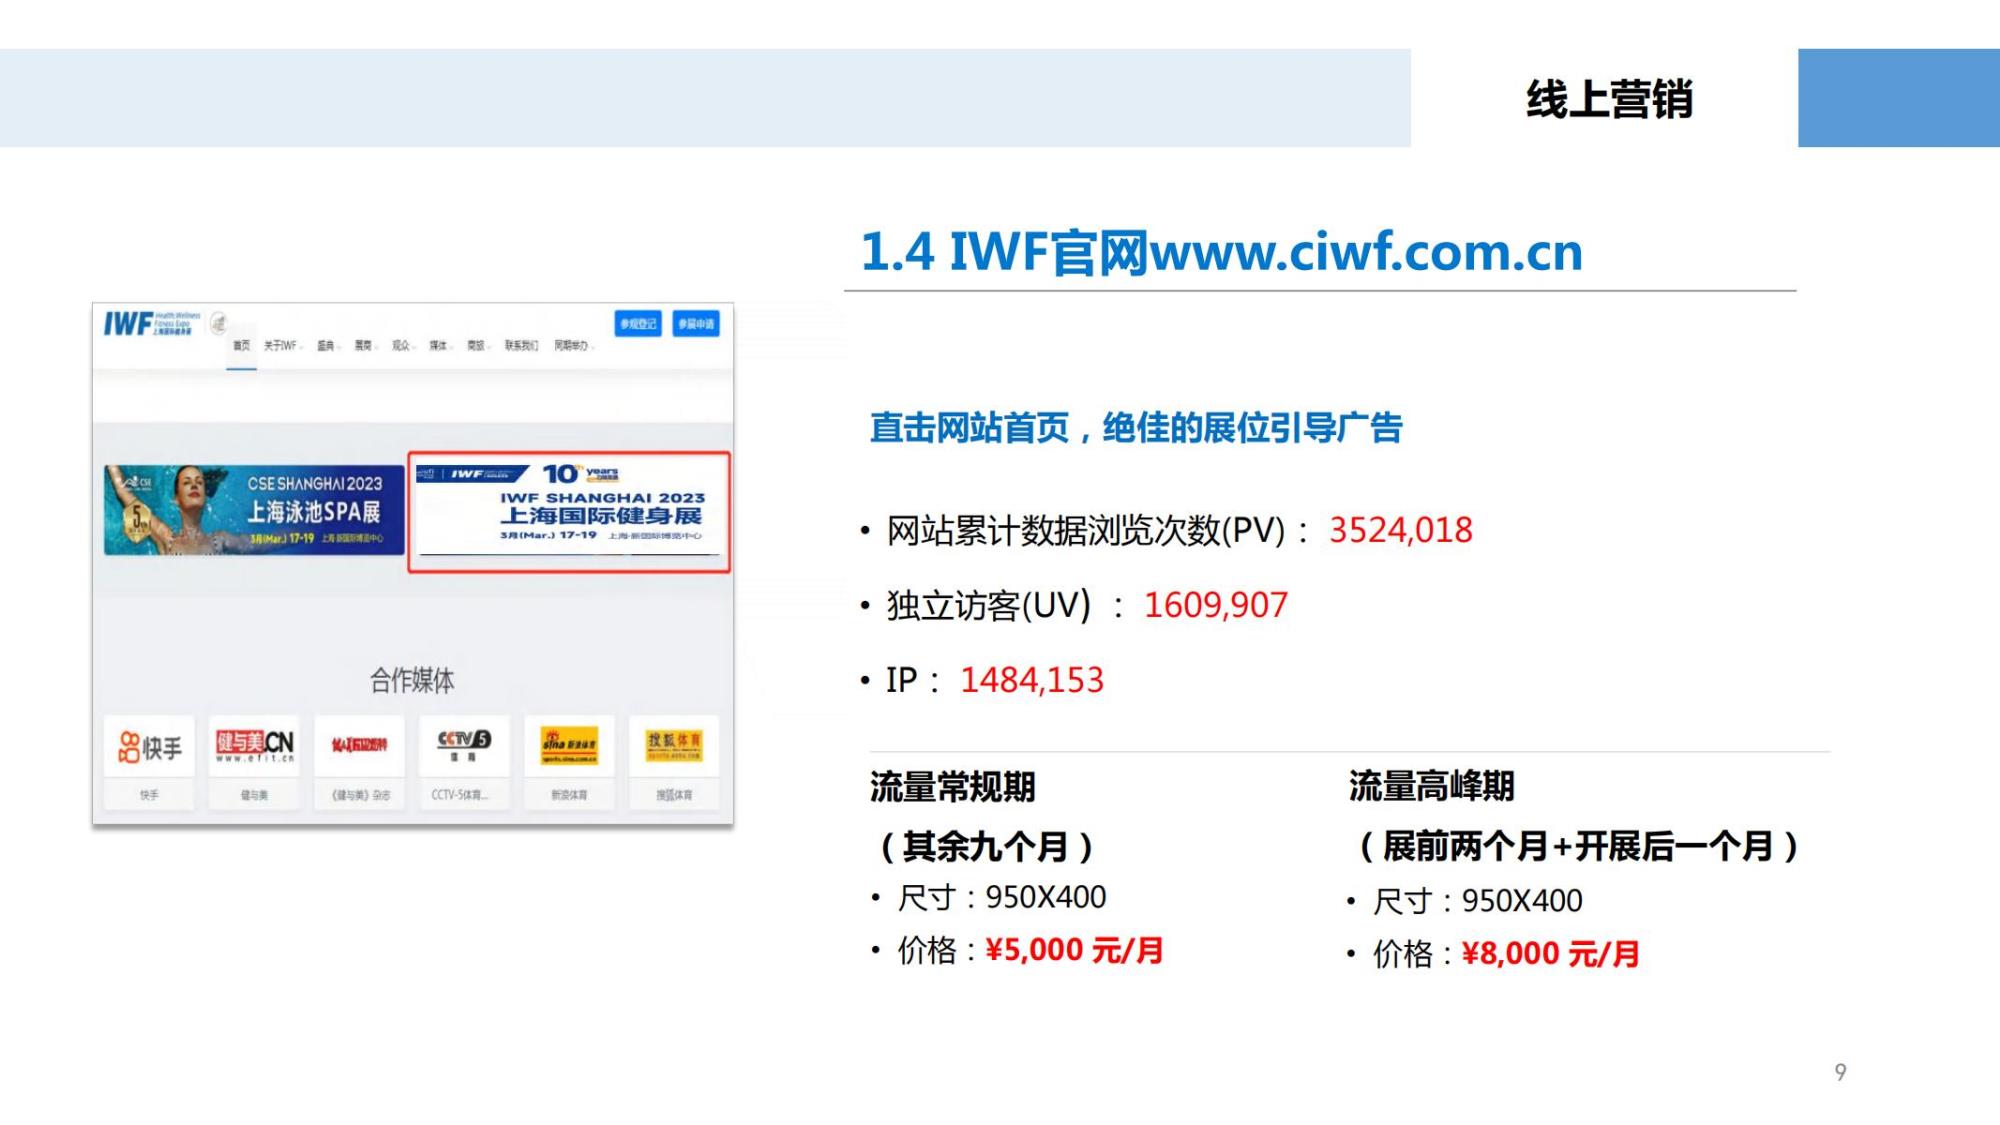 （已压缩）2023 IWF 市场推广手册VVV1116更新_08.jpg